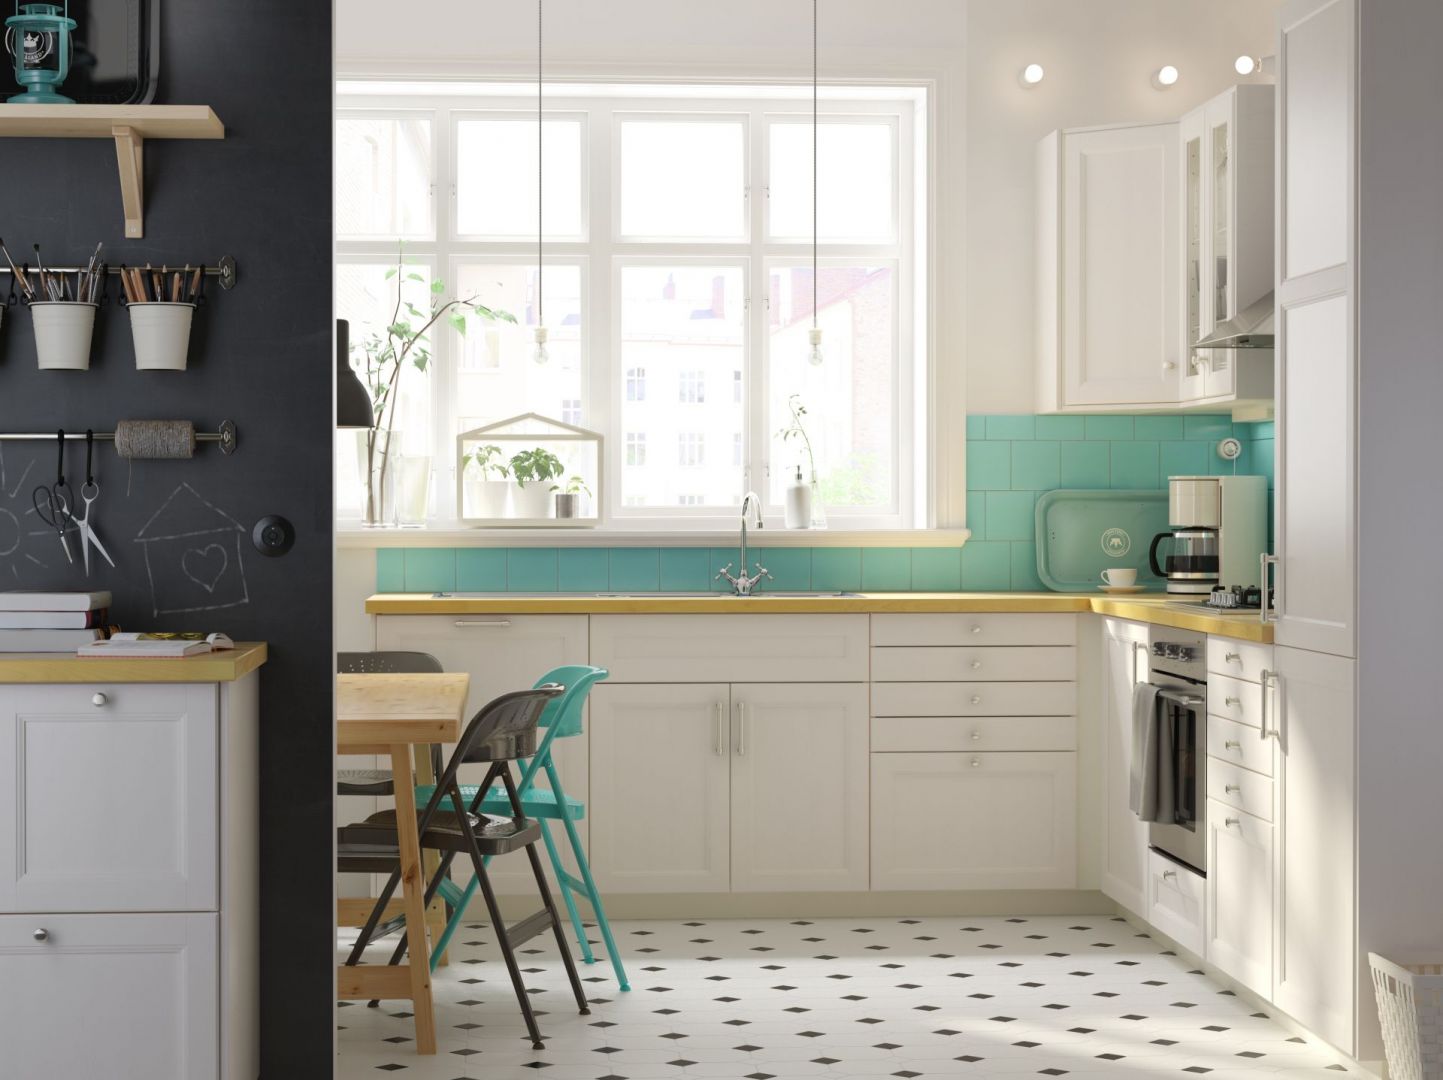 Klasyczne kuchnie z bieli najciekawiej prezentują się w matowej bieli, połączone z naturalnym drewnem lub eleganckim kamieniem. Fot. IKEA